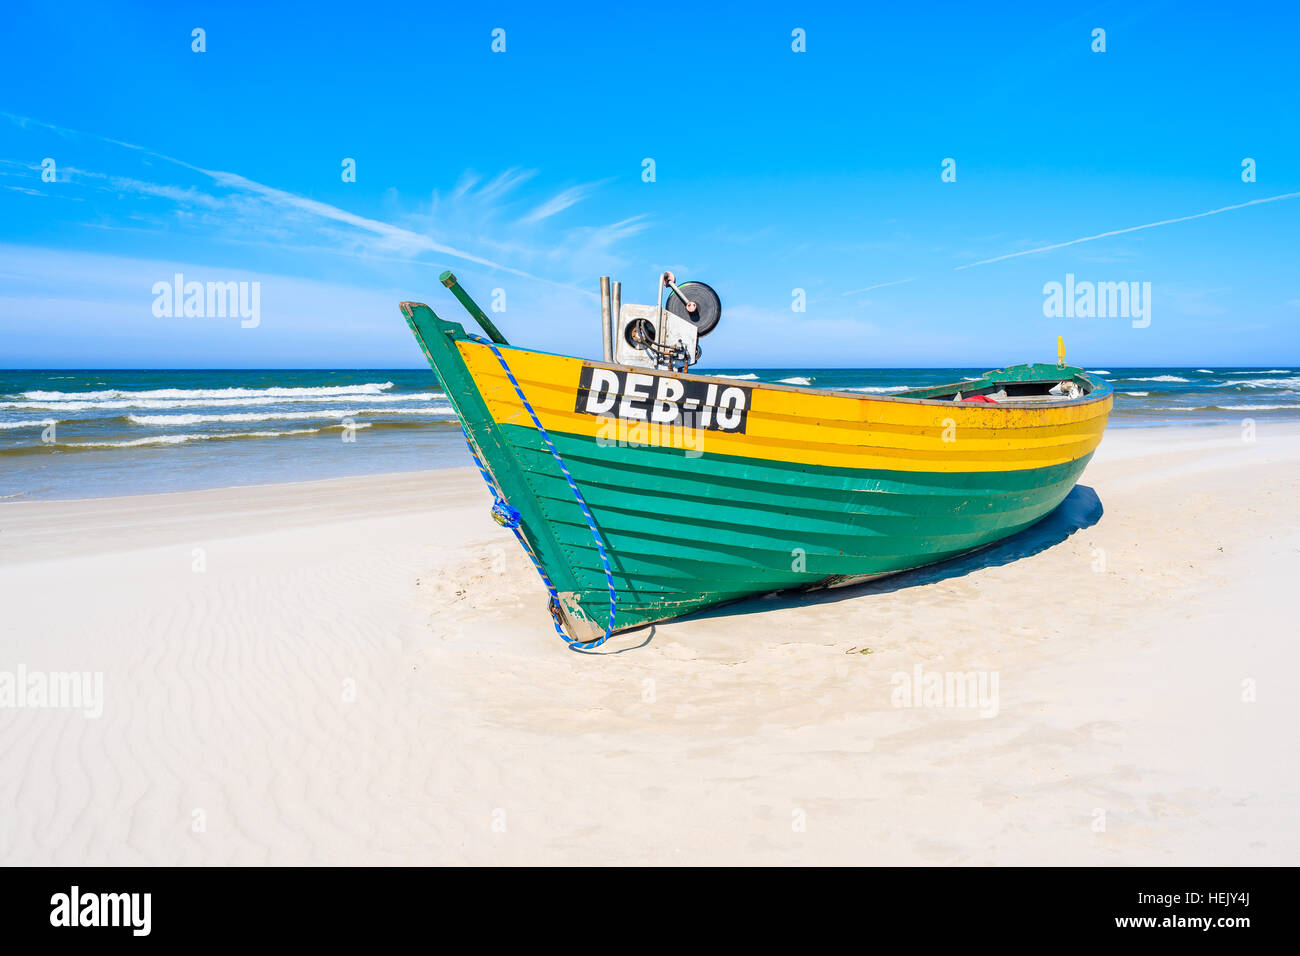 La mer Baltique, la Pologne - JUN 18, 2016 : bateau de pêche colorés sur la plage de sable de Debki, la mer Baltique, la Pologne. Banque D'Images